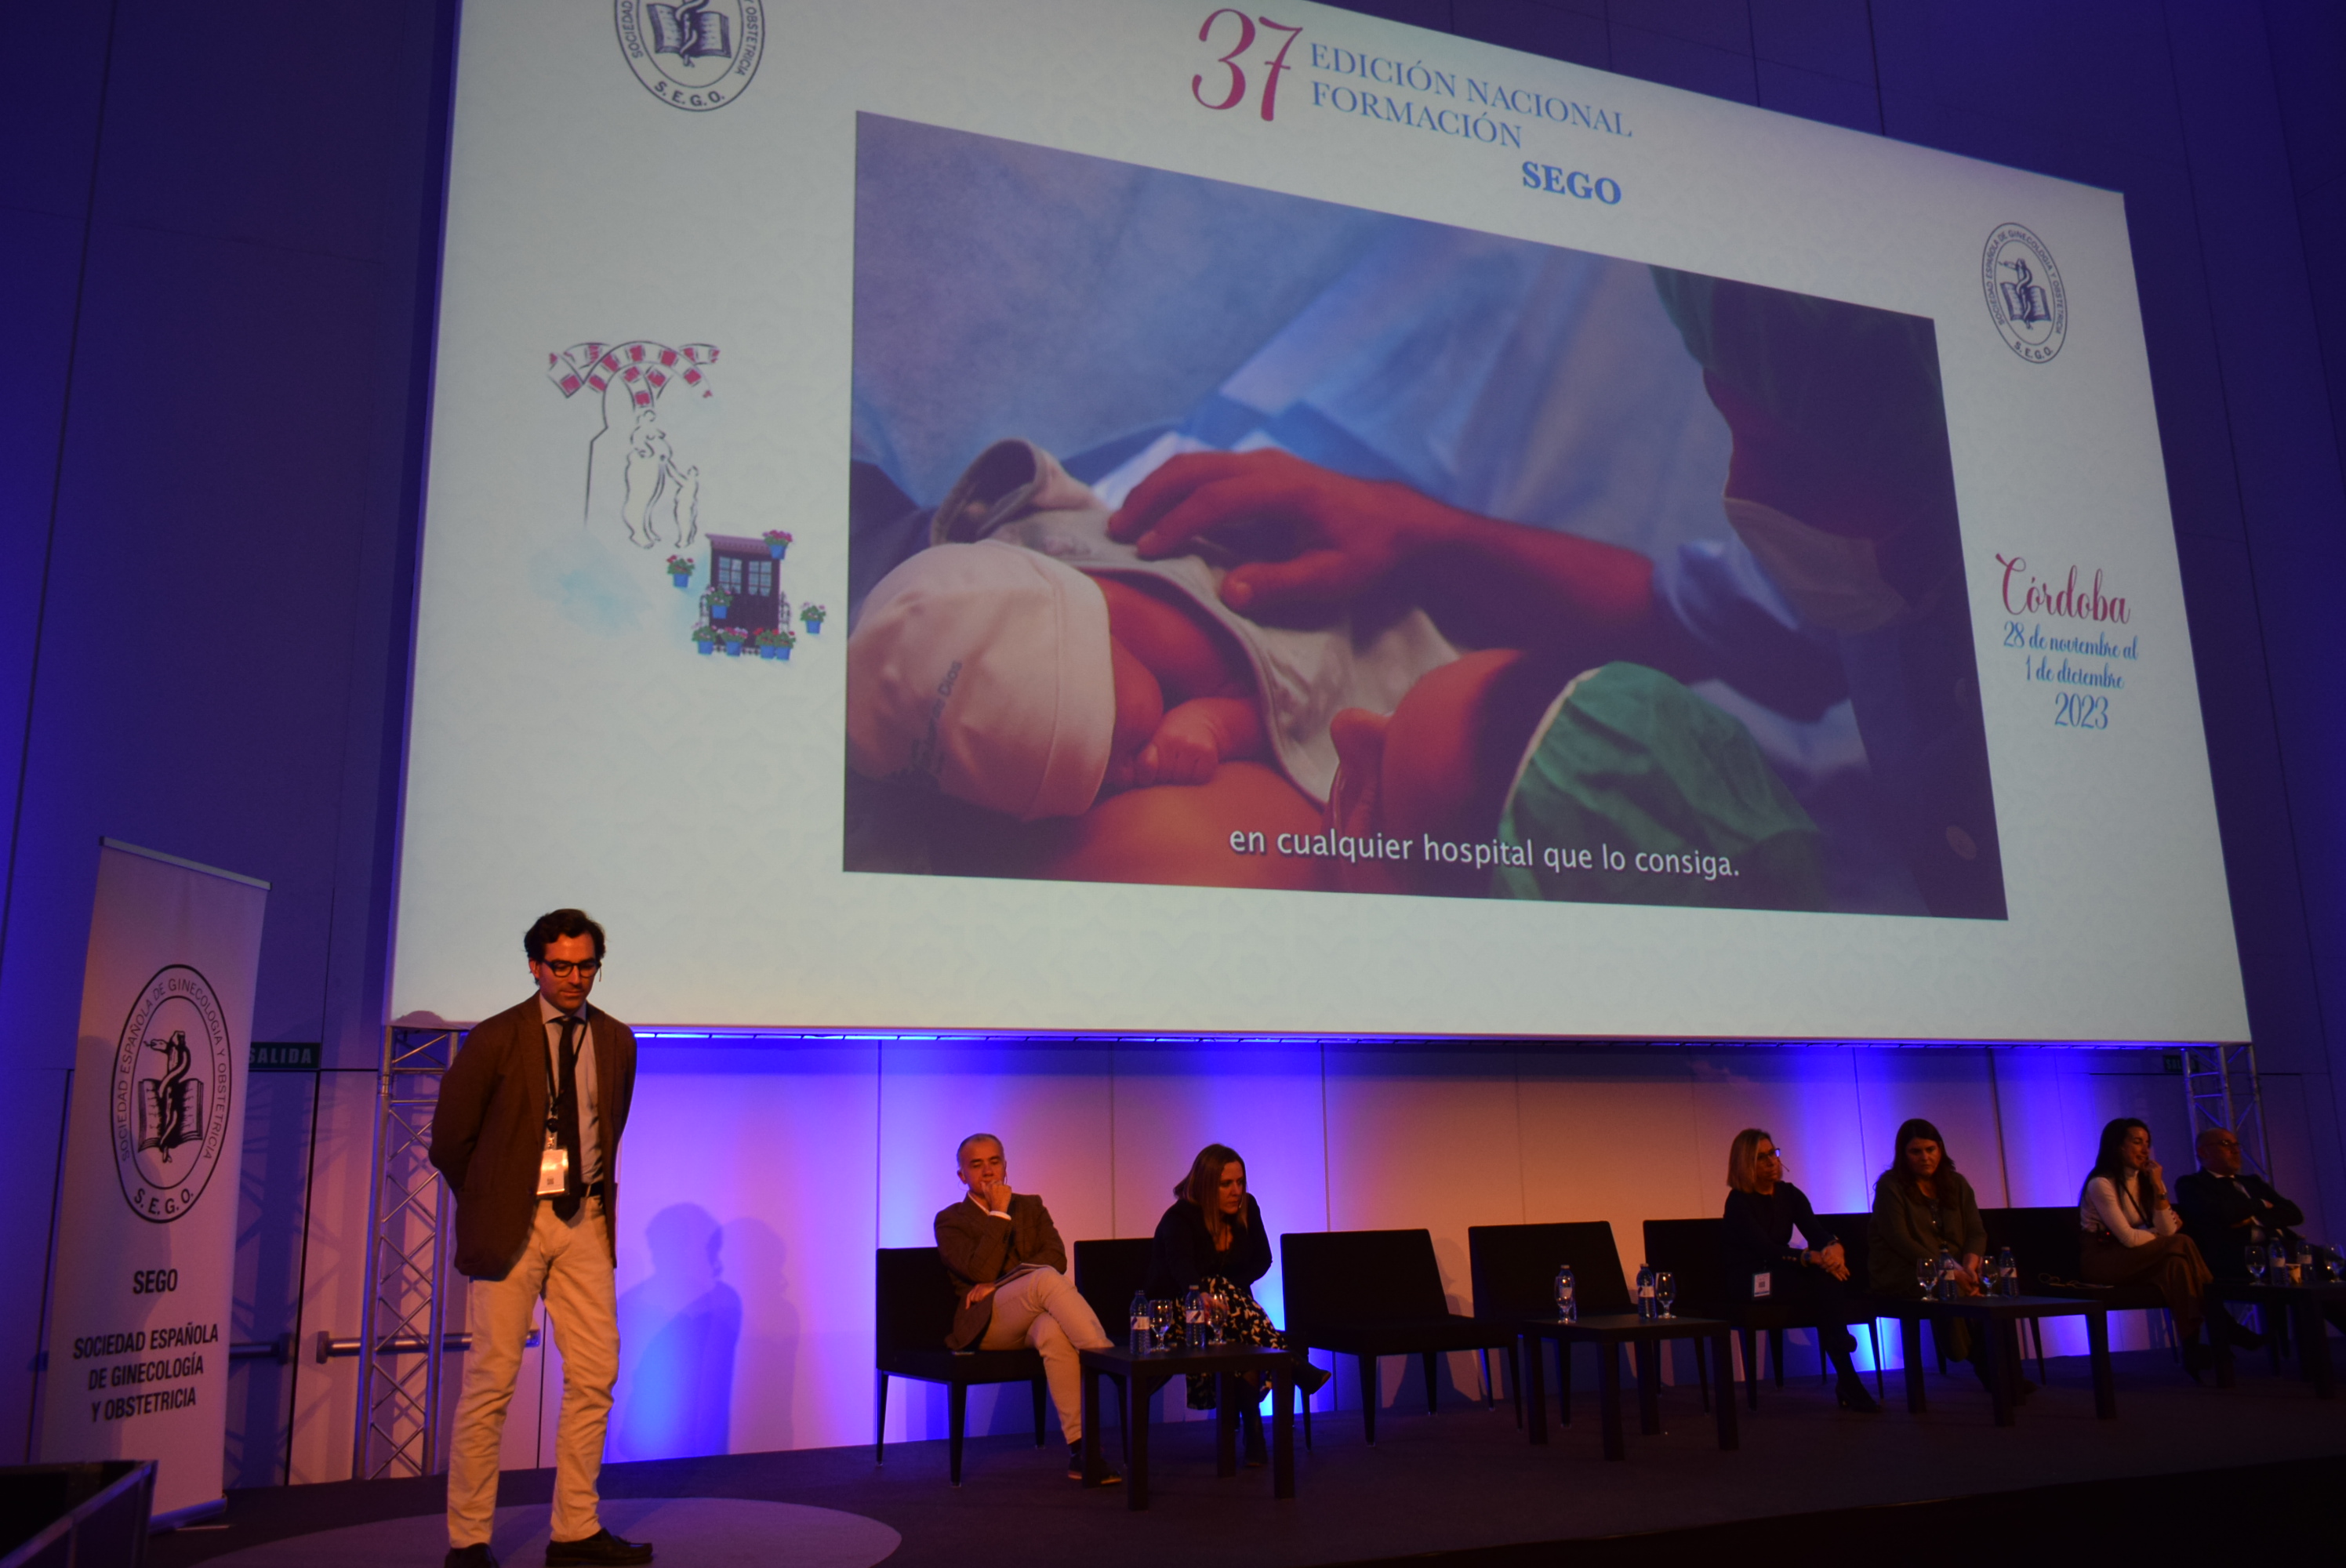 La cesárea provínculo: el nuevo paradigma en la atención humanizada durante el parto que cada vez aplican más hospitales en España